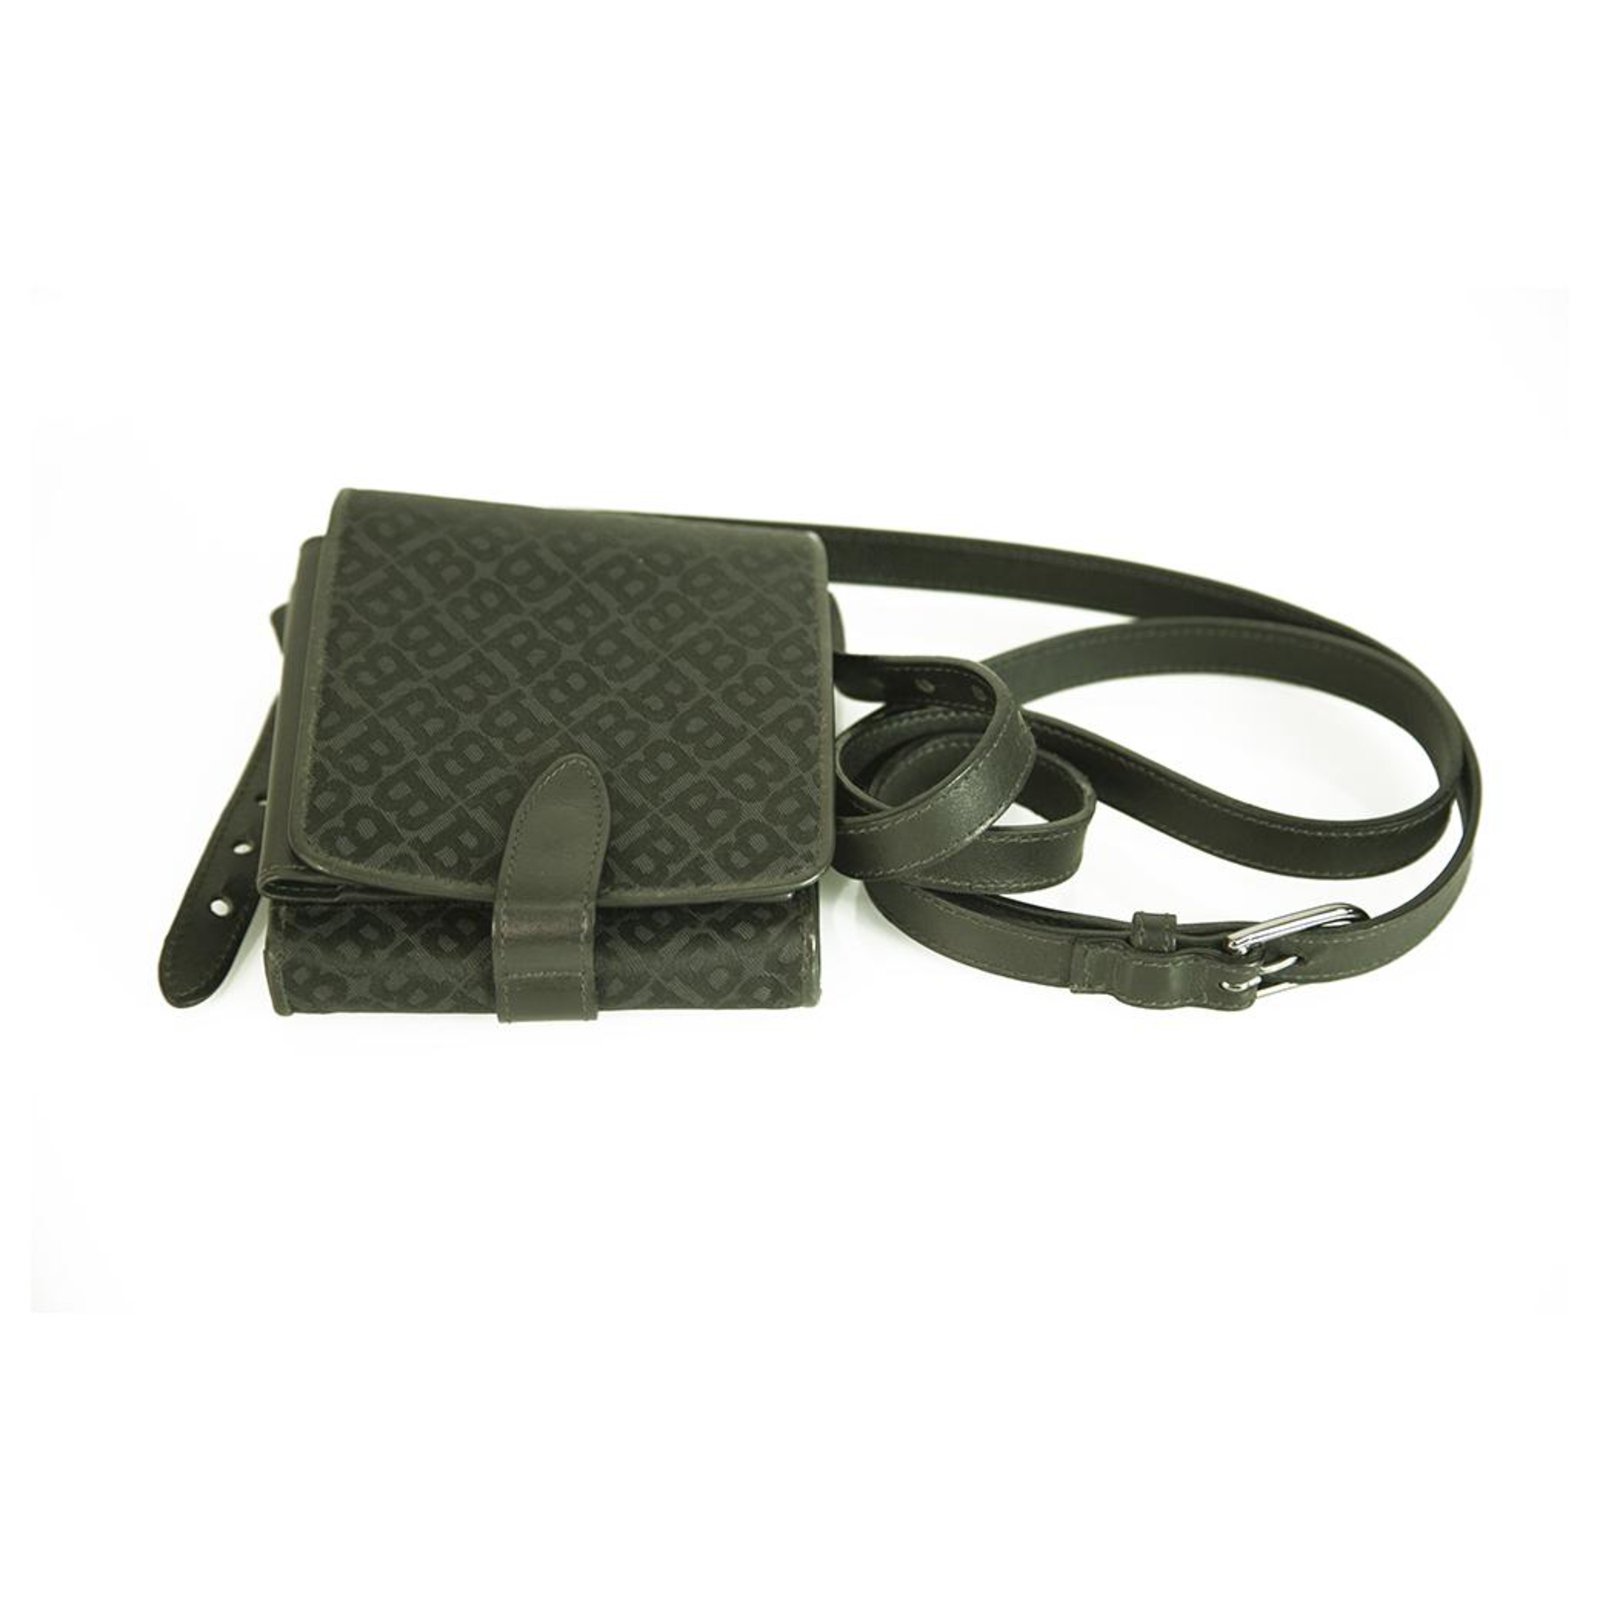 BALLY Black Leather Shoulder Strap Messenger Bag